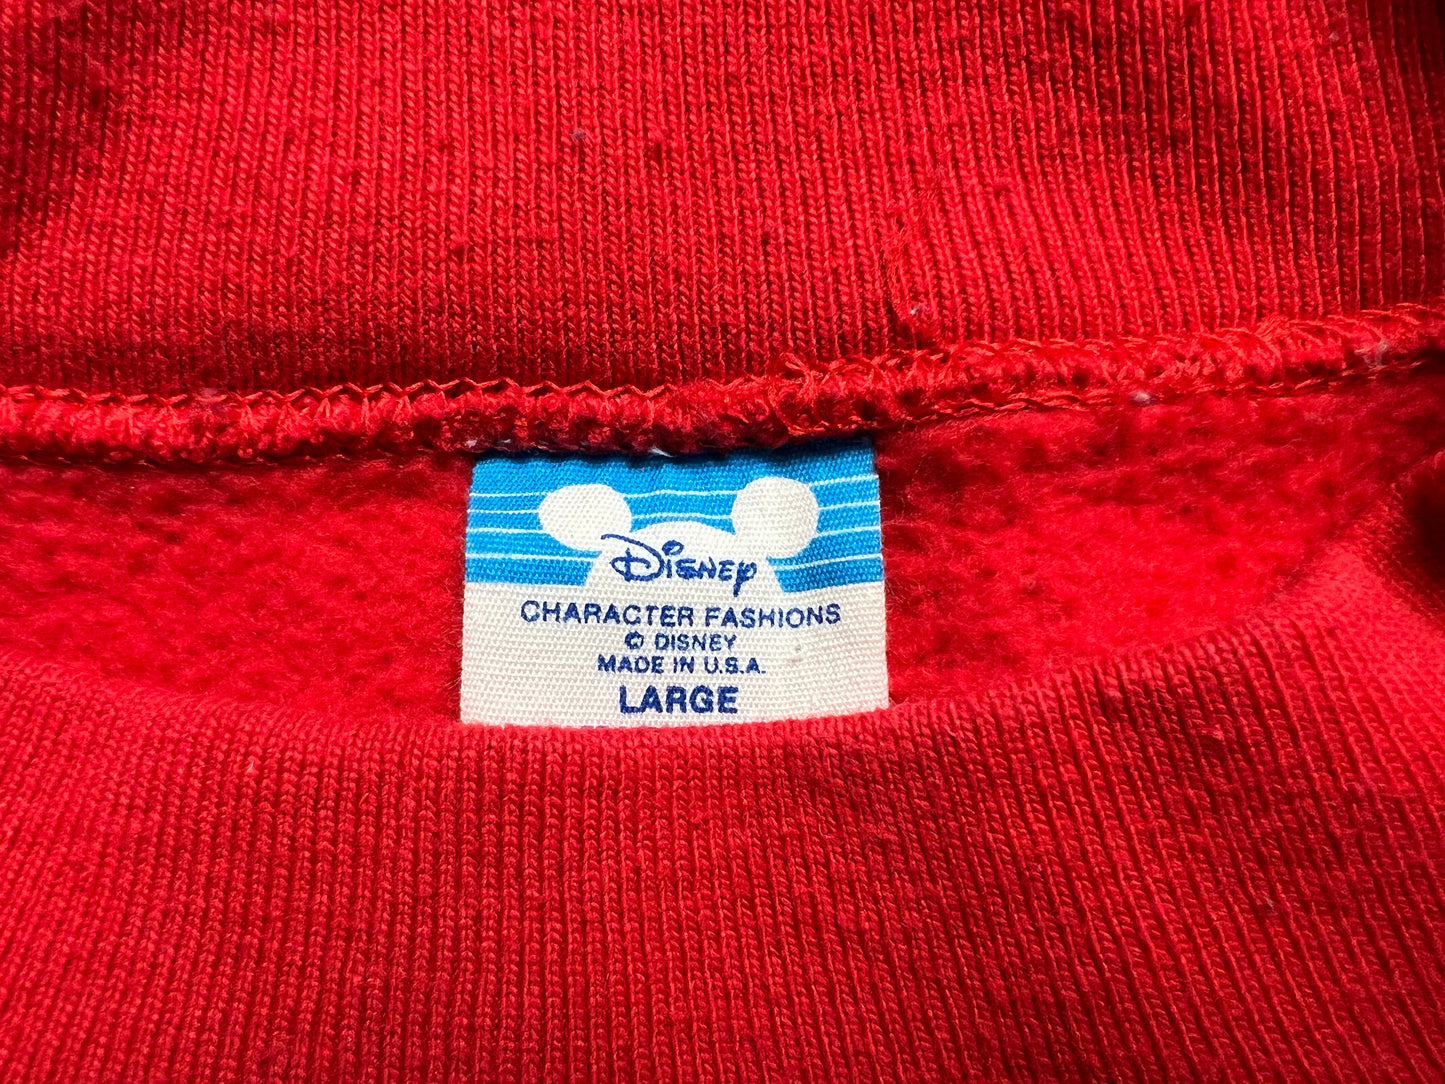 Vintage 80’s Disney Mickey Mouse Seasons Greetings Santa Sweatshirt